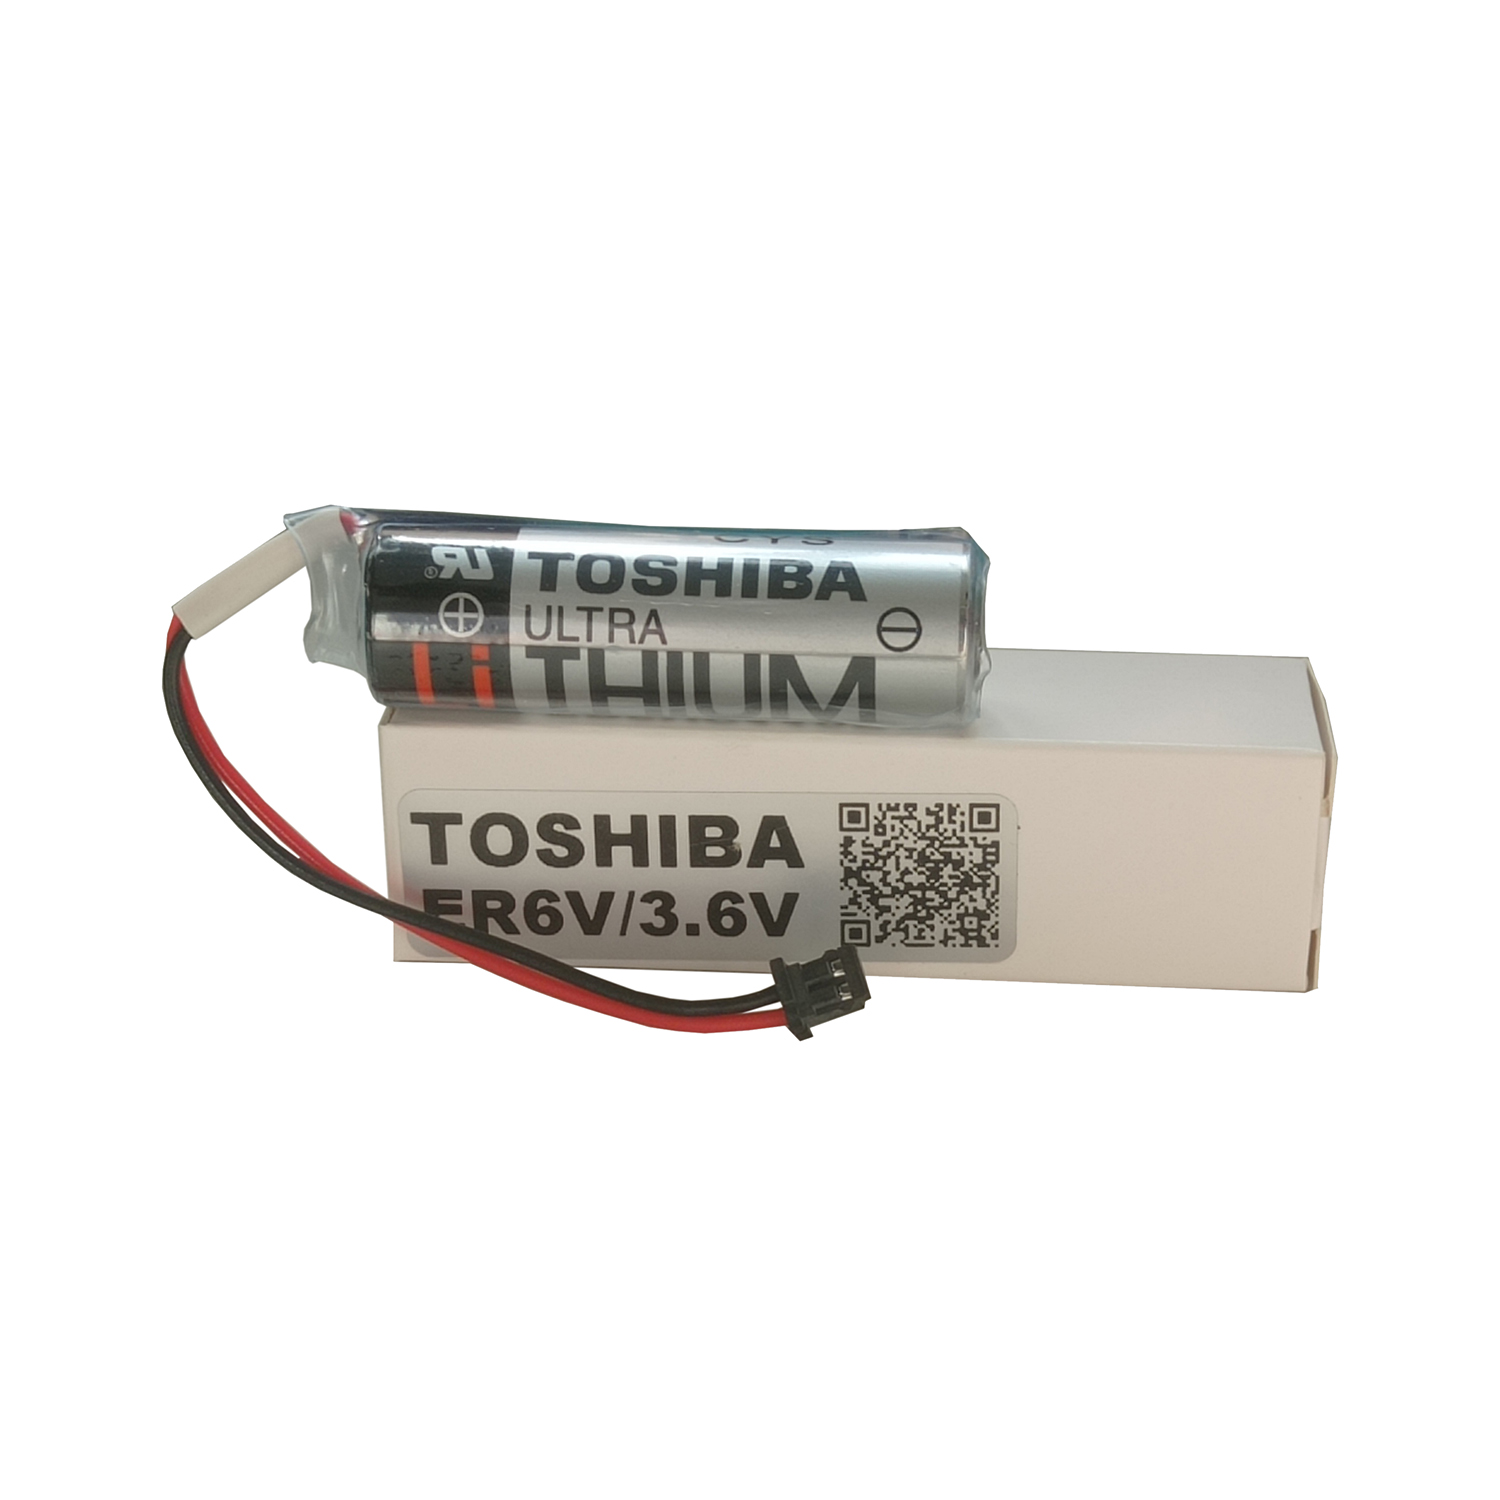 باتری الترا لیتیوم توشیبا  3.6 ولت ER6VC119B